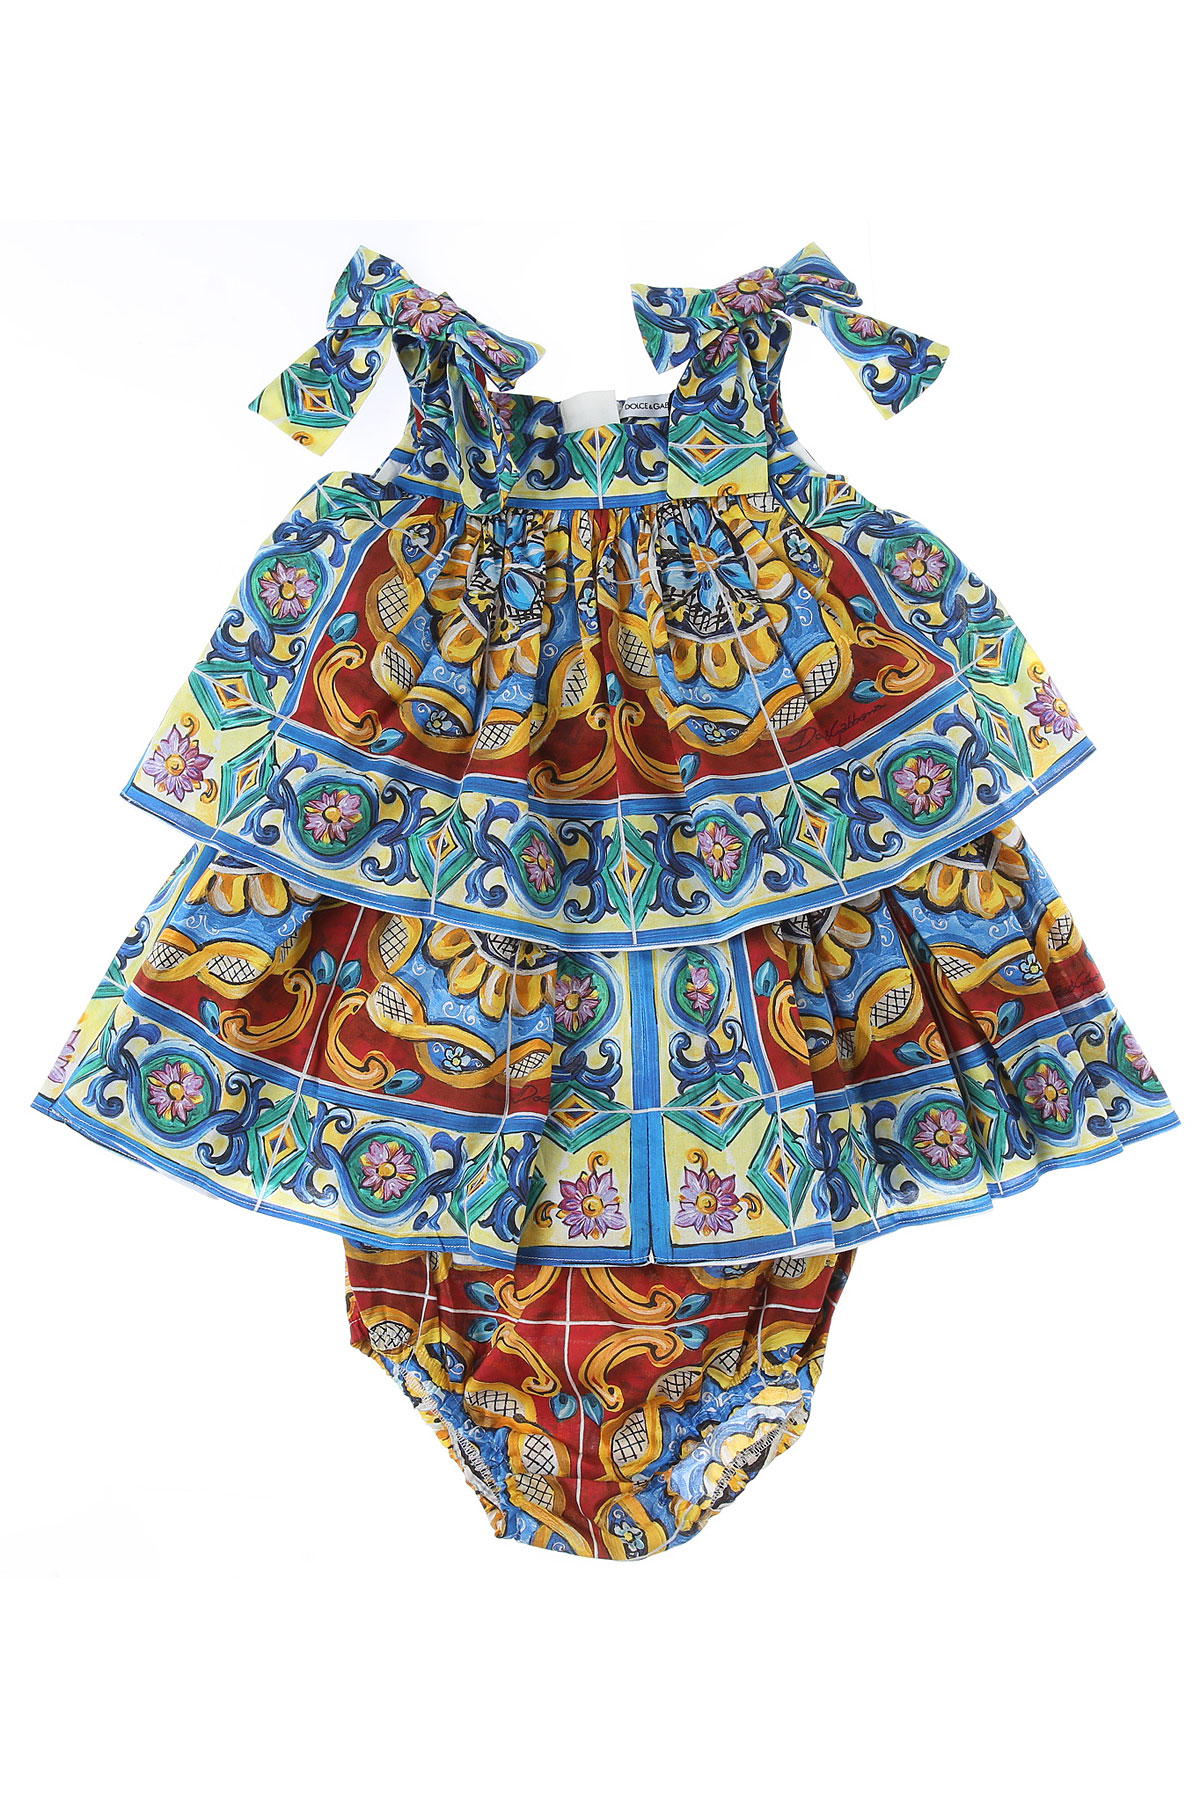 Dolce & Gabbana Baby Kleid für Mädchen Günstig im Outlet Sale, Mehrfarbig, Baumwolle, 2017, 12M 18M 24M 9M